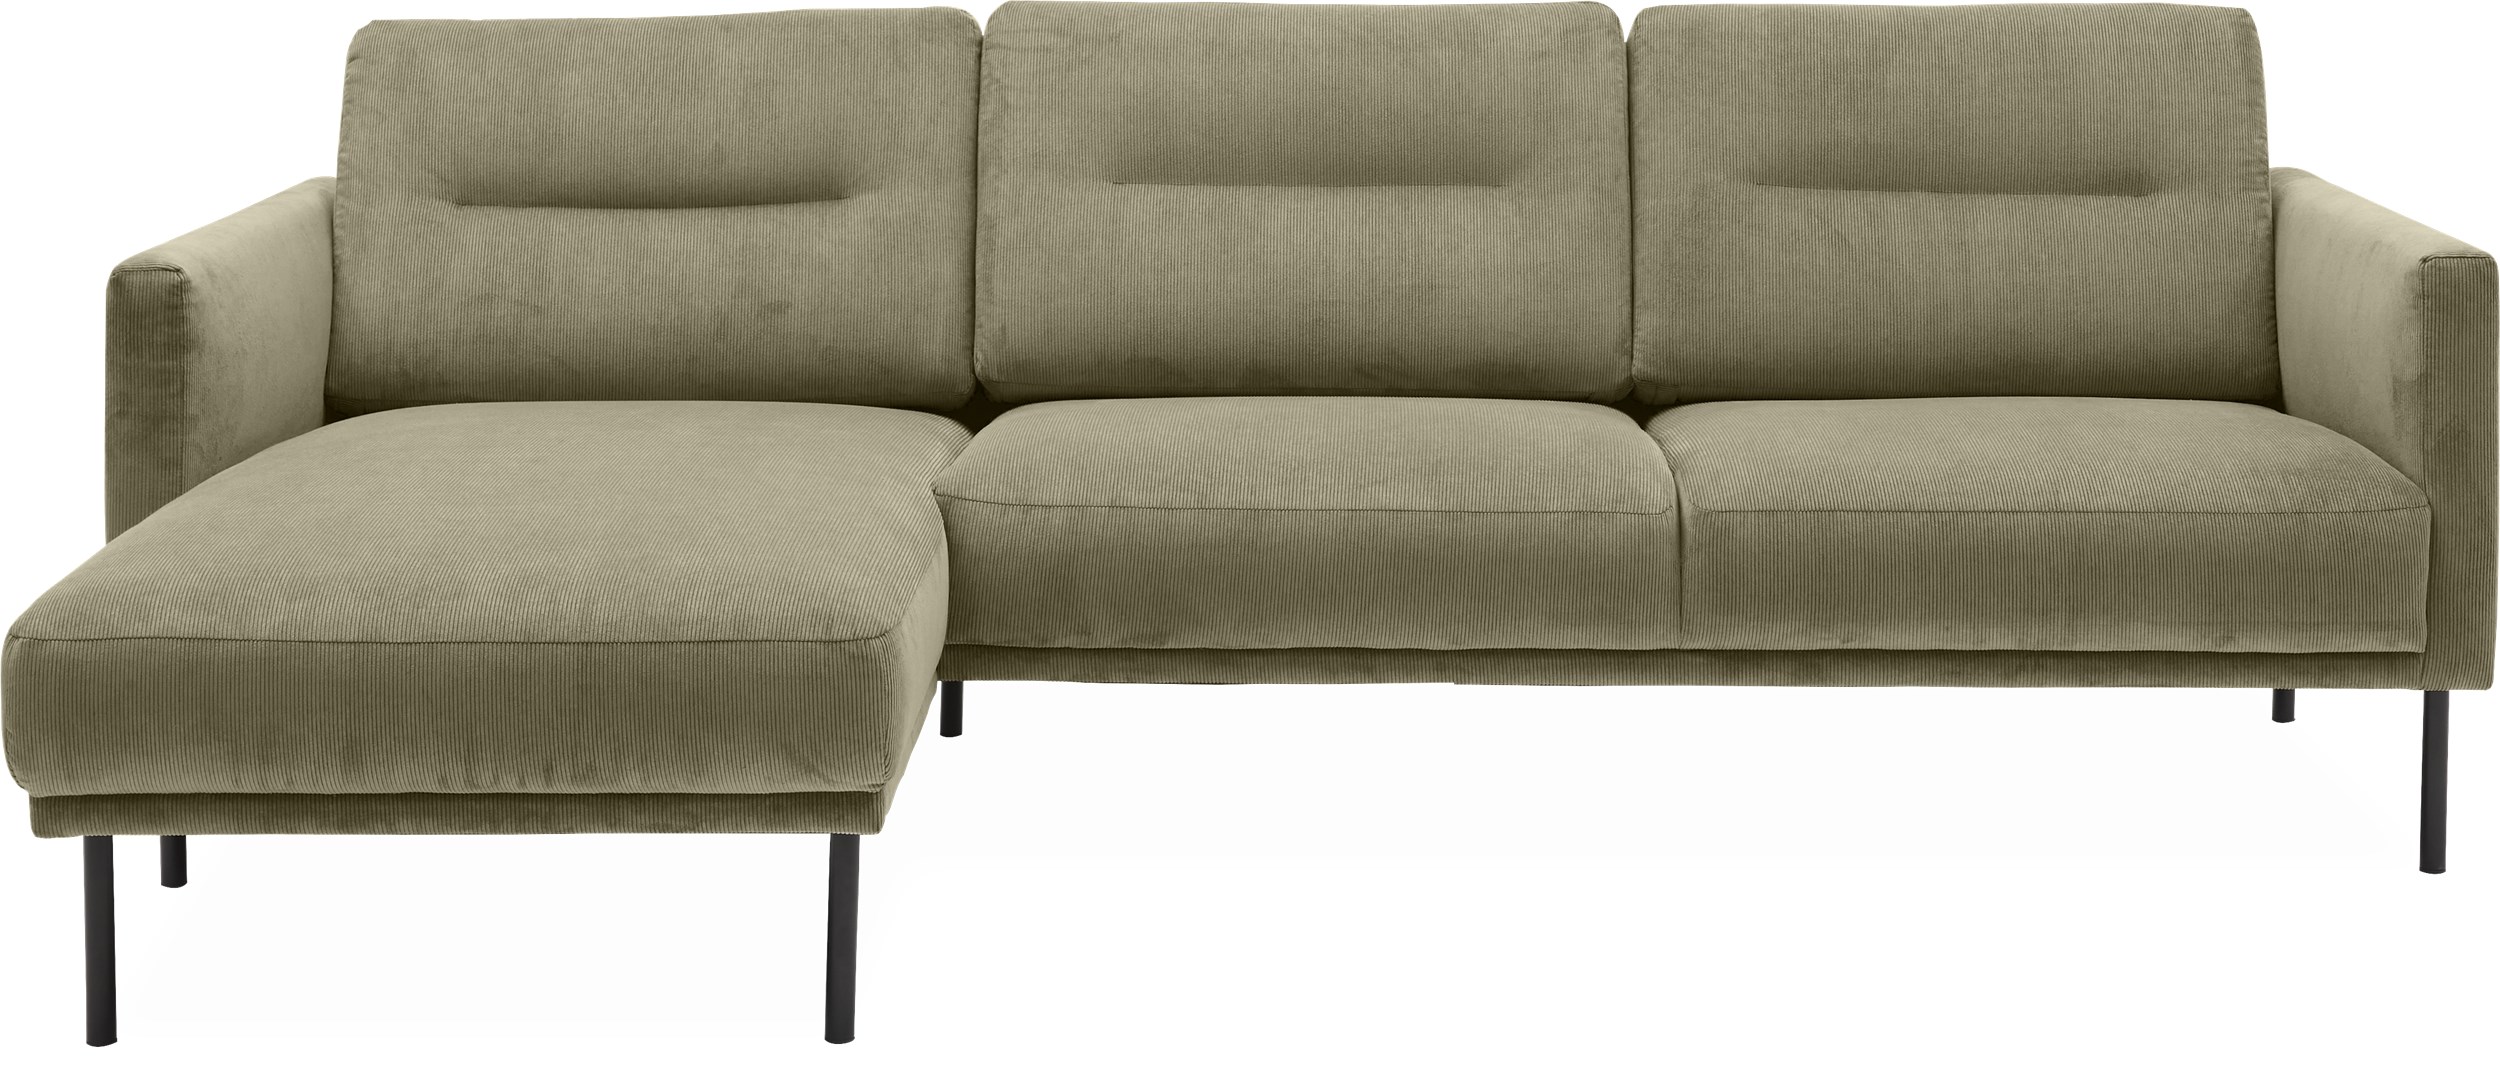 Larvik venstrevendt sofa med chaiselong 